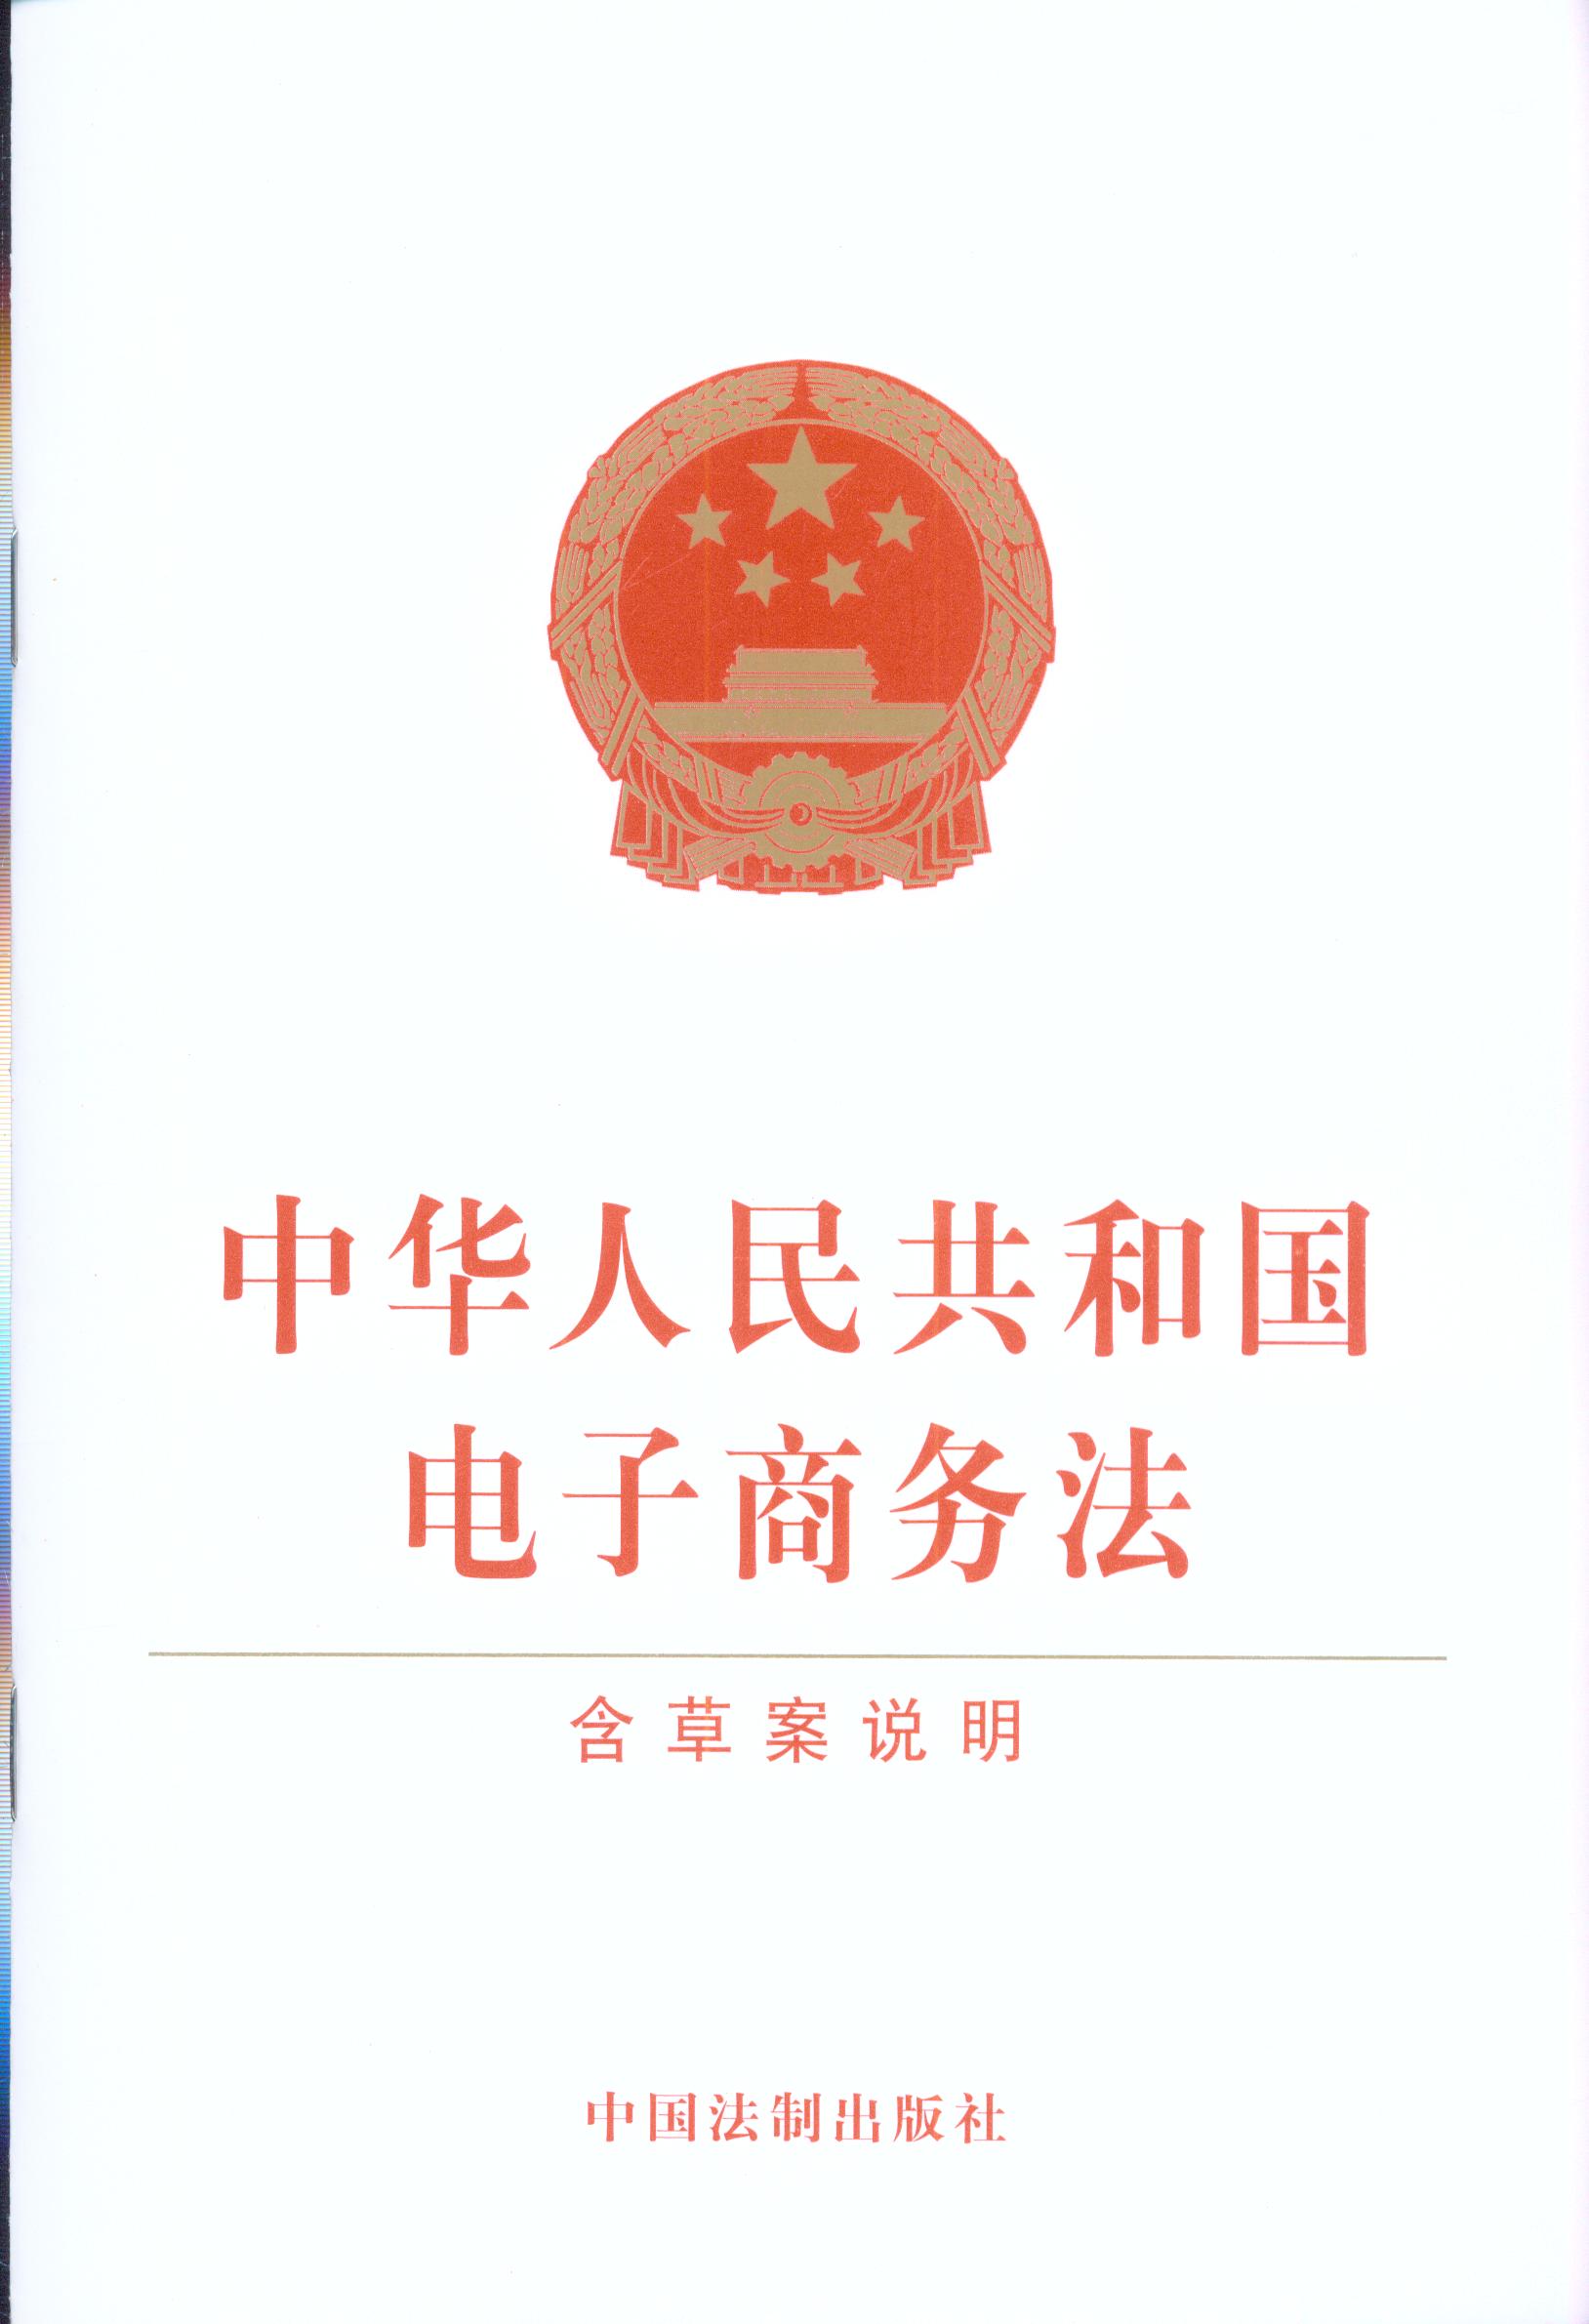 我国电商首部综合性立法——《中华人民共和国电子商务法》终获十三届全国人大常委会会议表决通过